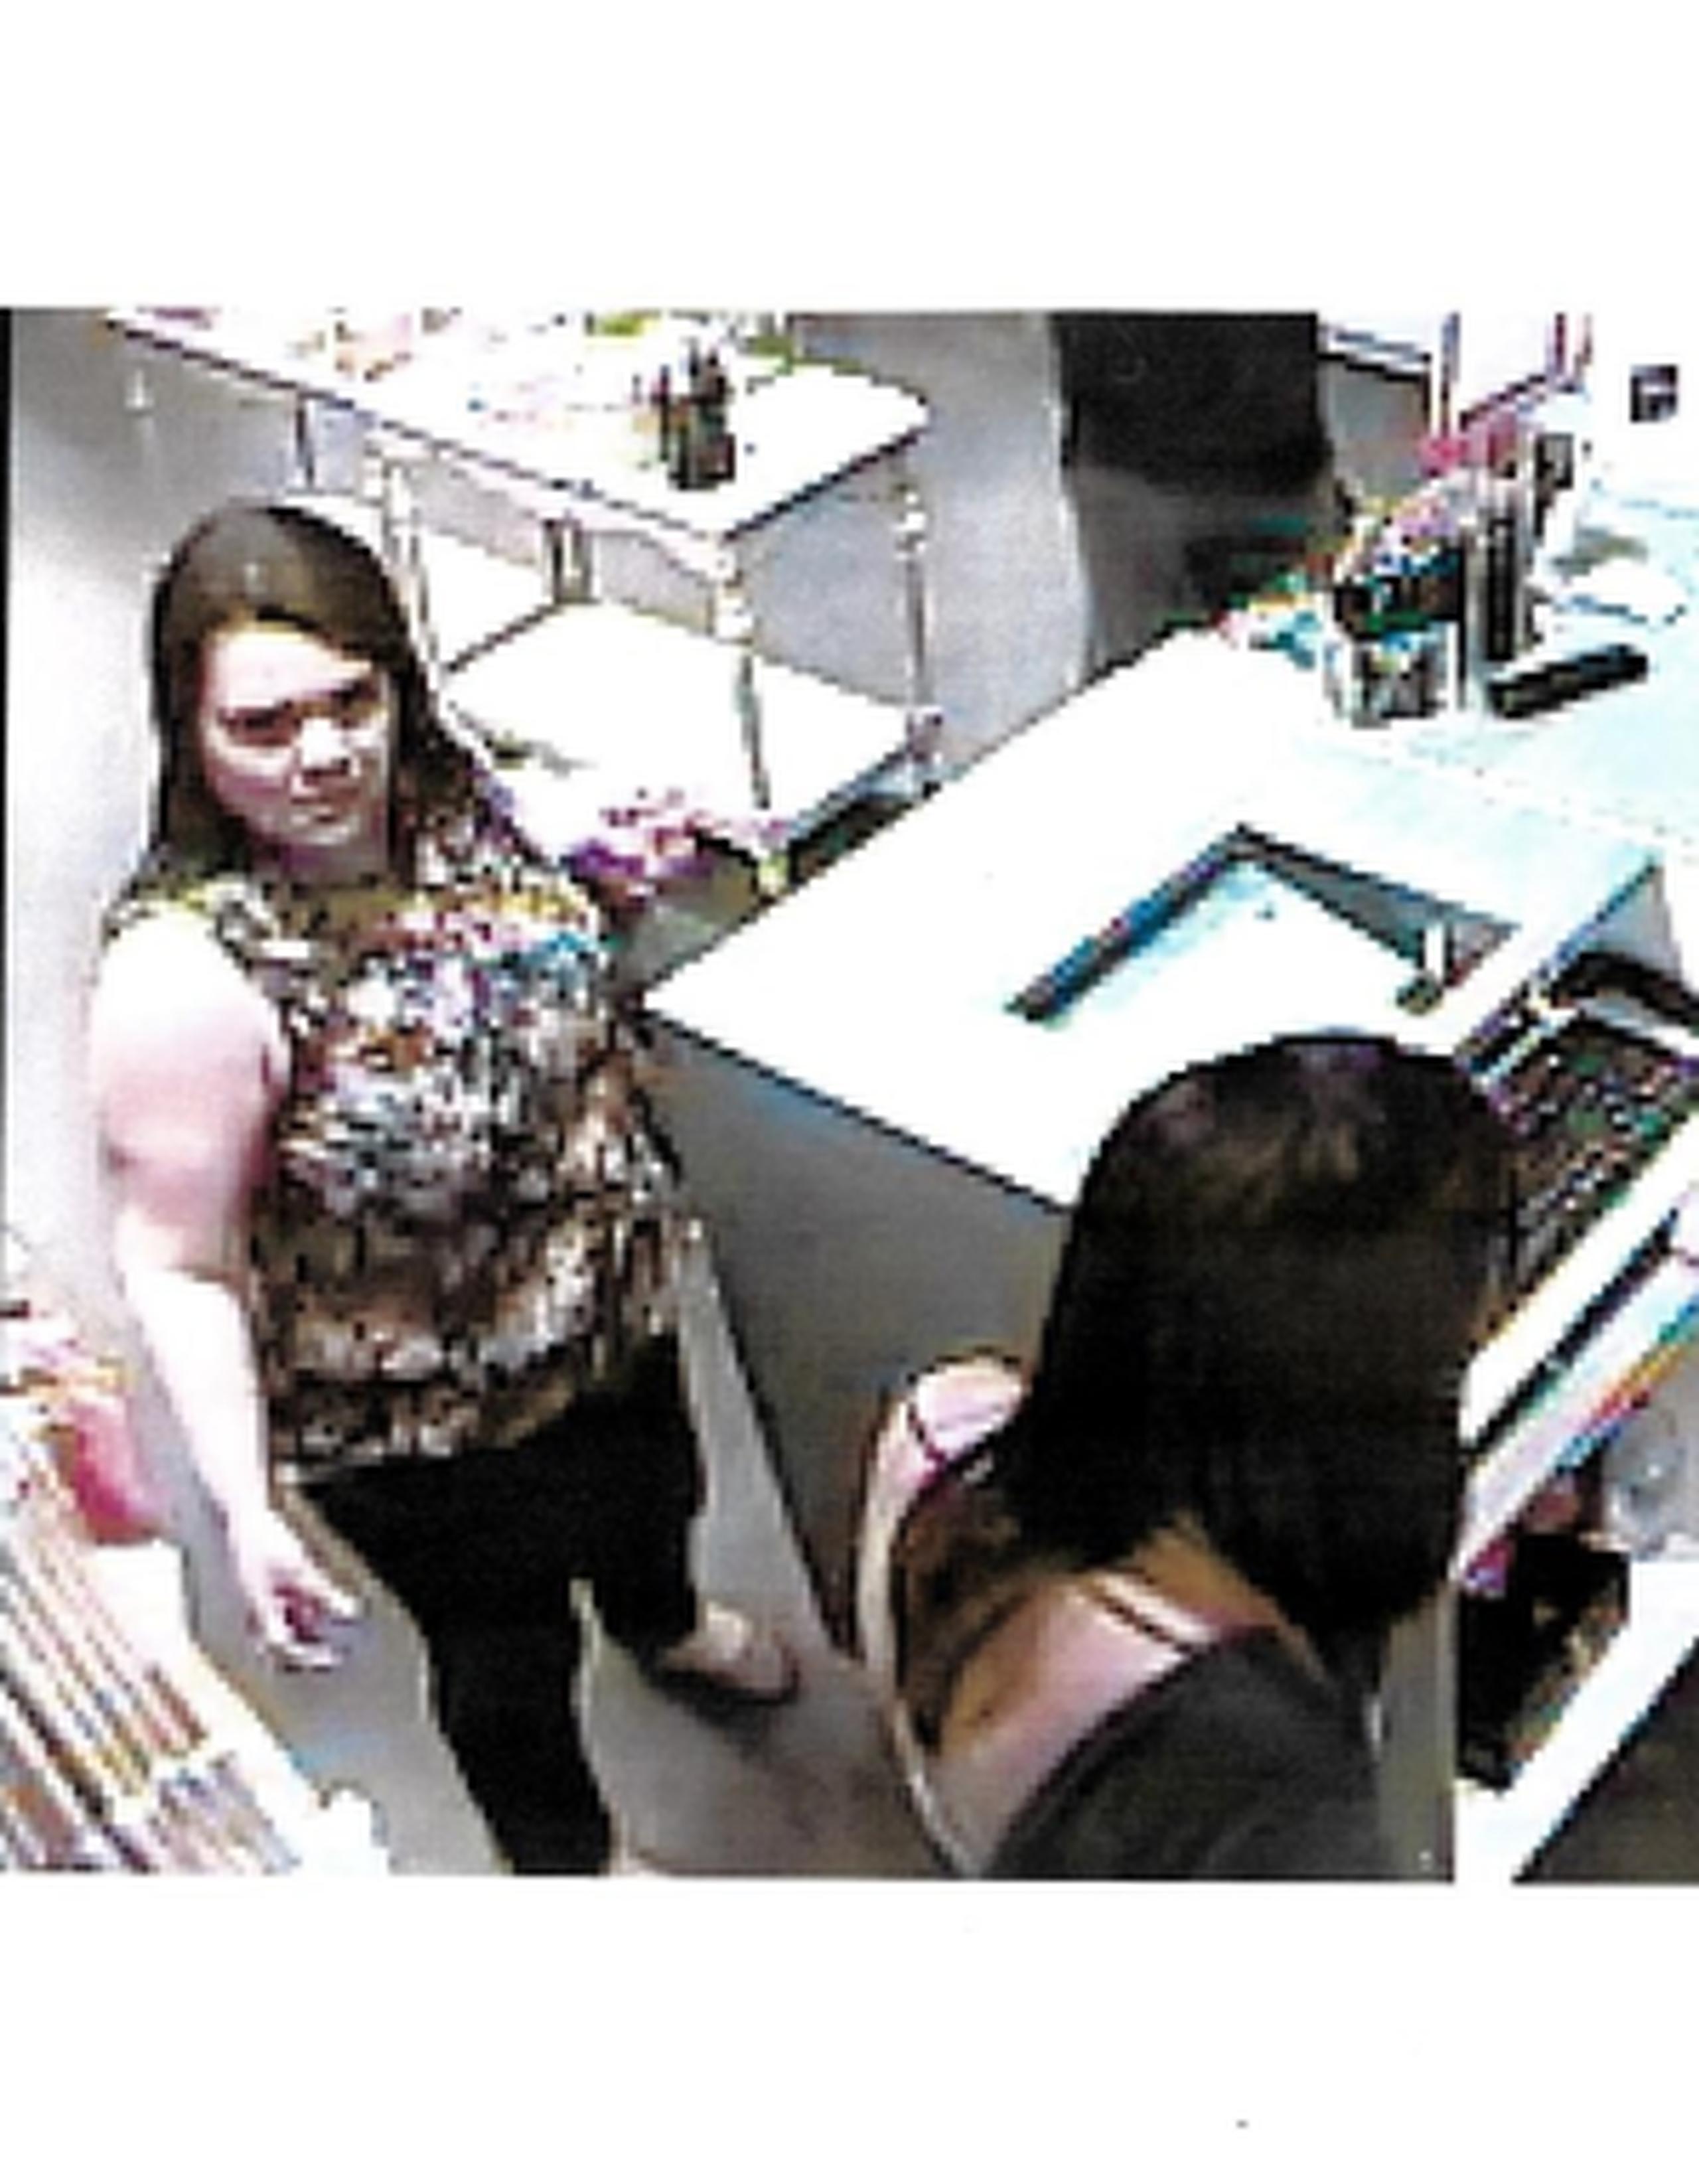 La Policía busca identificar a la mujer en esta imagen, sospechosa de robar una cartera en la tienda Valija, de Plaza Las Américas. (Suministrada)